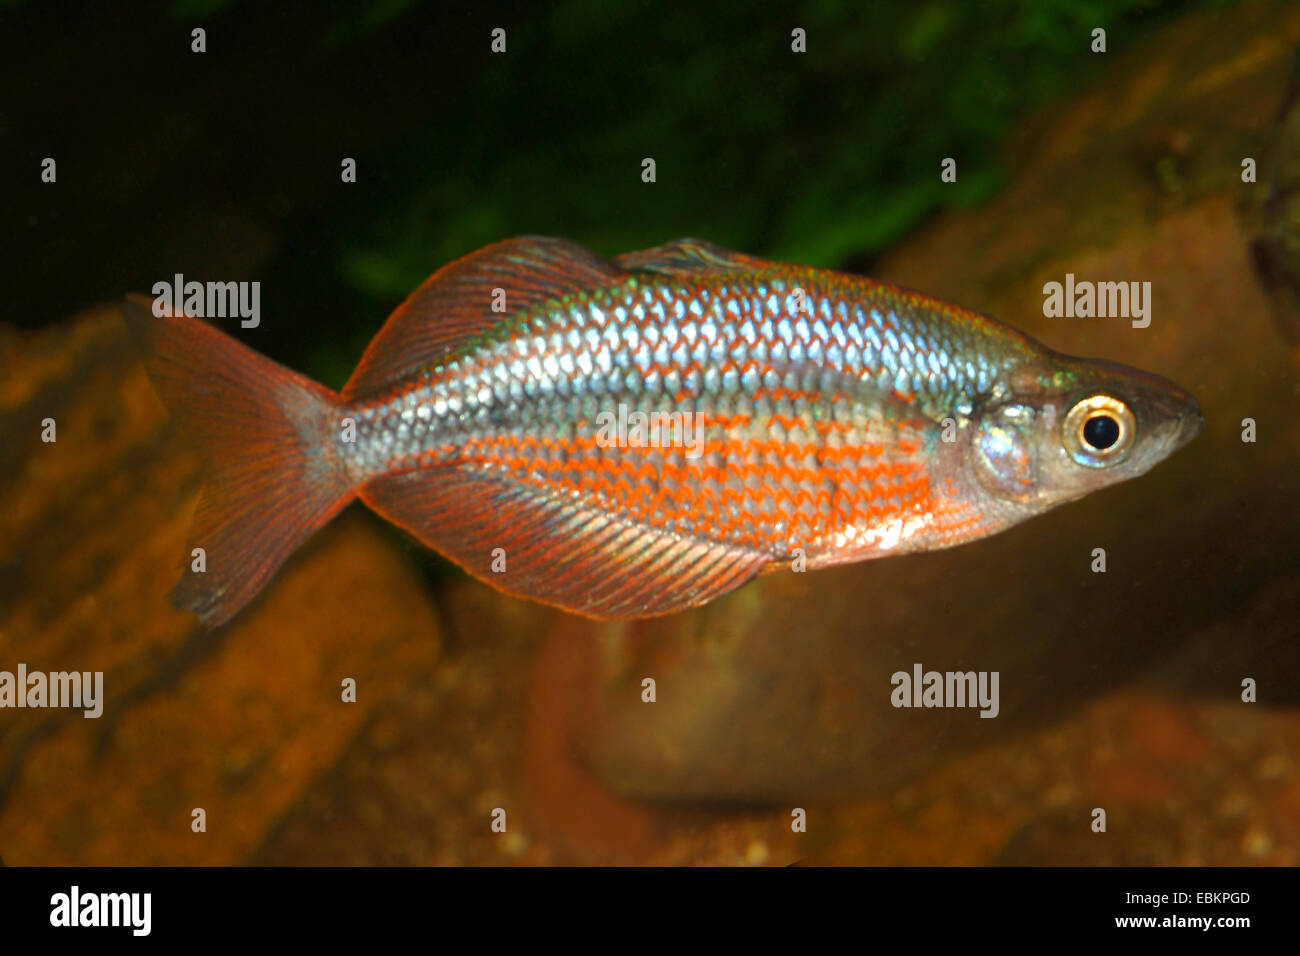 Doritys rainbowfish (Glossolepis dorityi), swimming Stock Photo